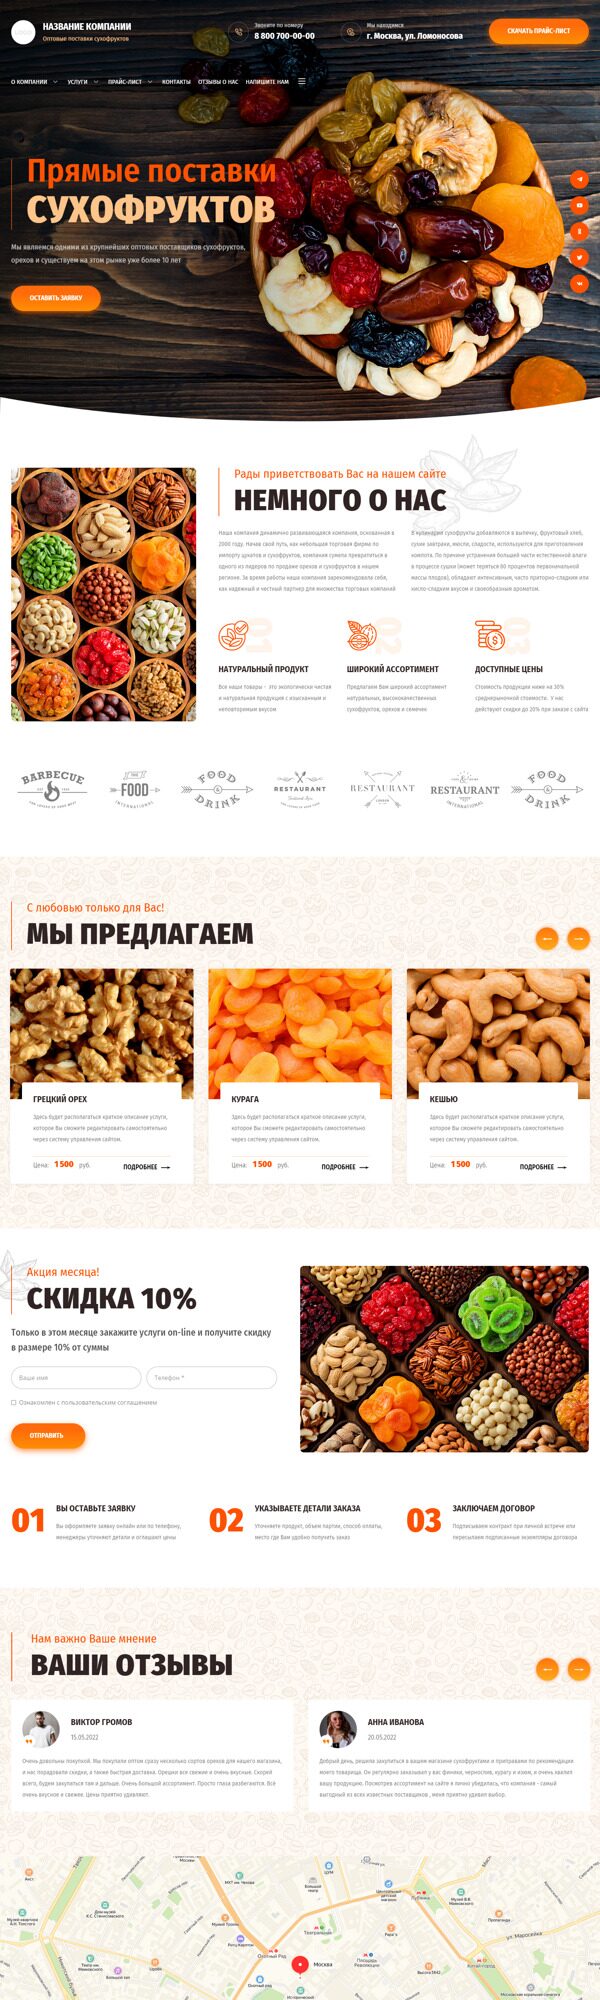 Готовый Сайт-Бизнес № 4270683 - Сухофрукты, орехи, семечки (Десктопная версия)